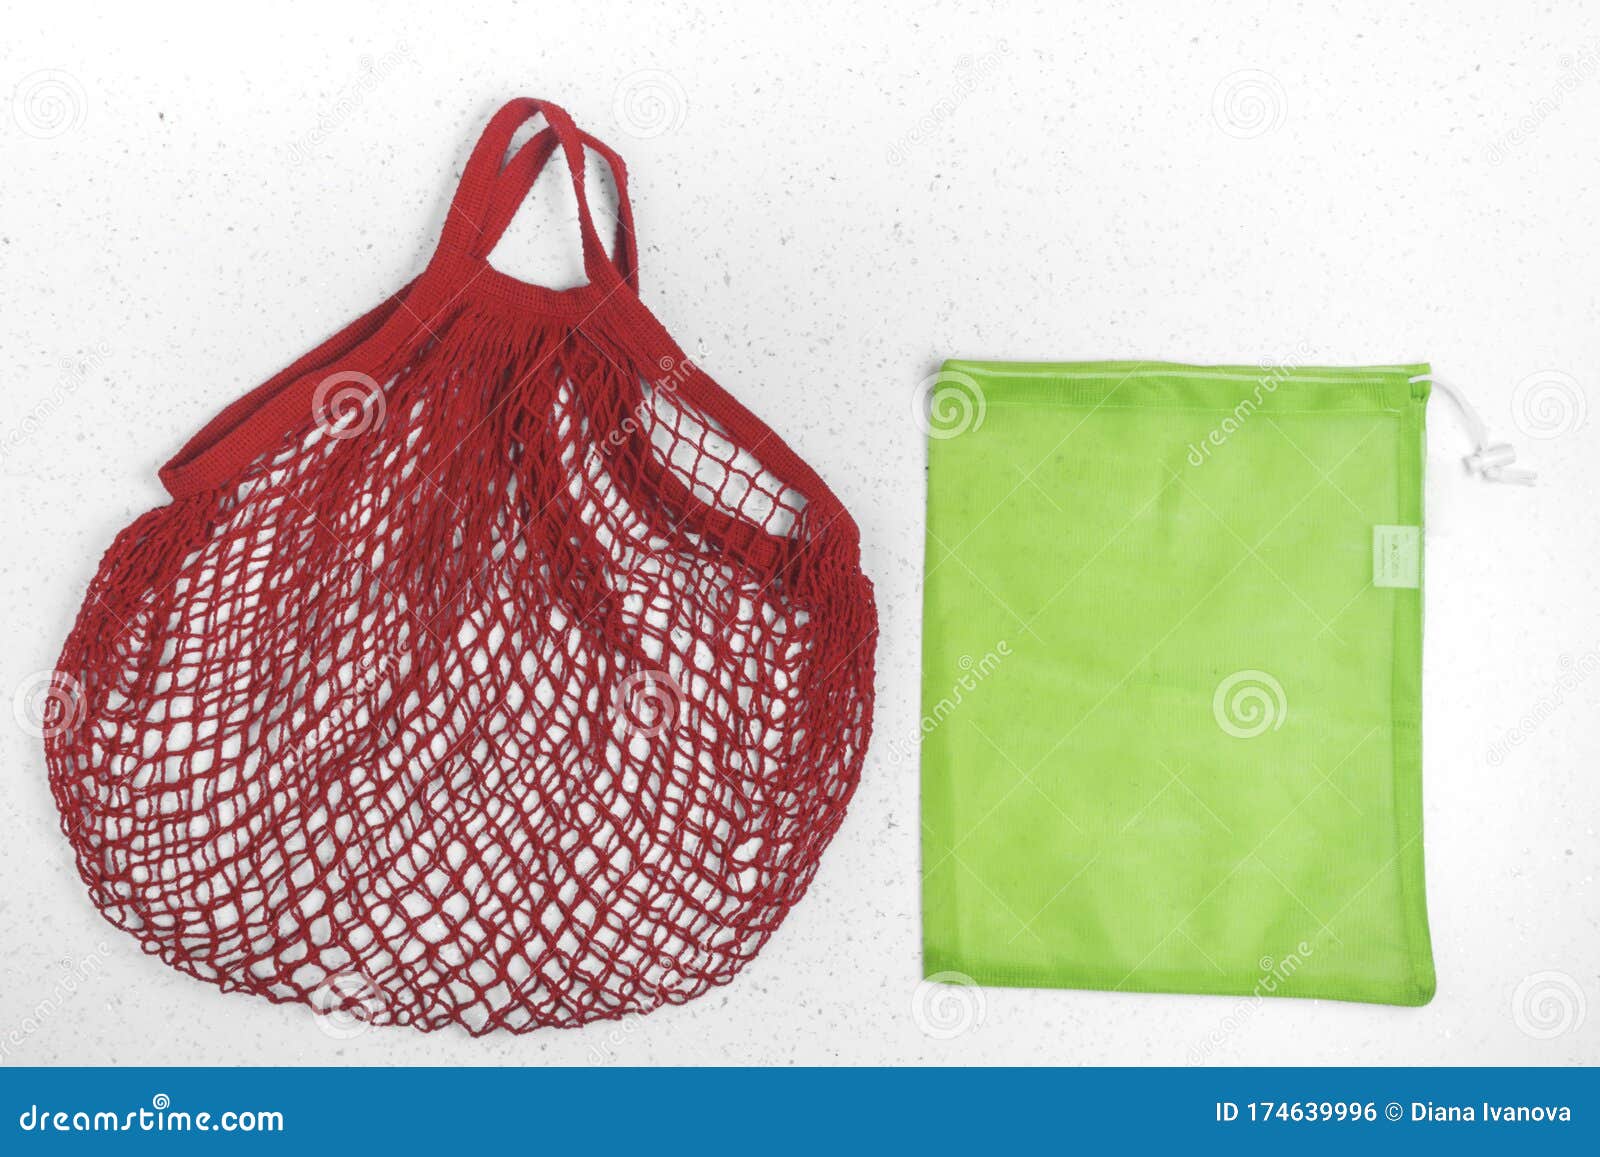 Young Min Bolsas Compra Reutilizables Ecológicas Bolsa de la compra Bolsa de Malla para Almacenamiento Fruta Verduras Juguetes Lavable y Transpirable 13 Pcs 3L+6M+3S+1 * Bolsa de Red 